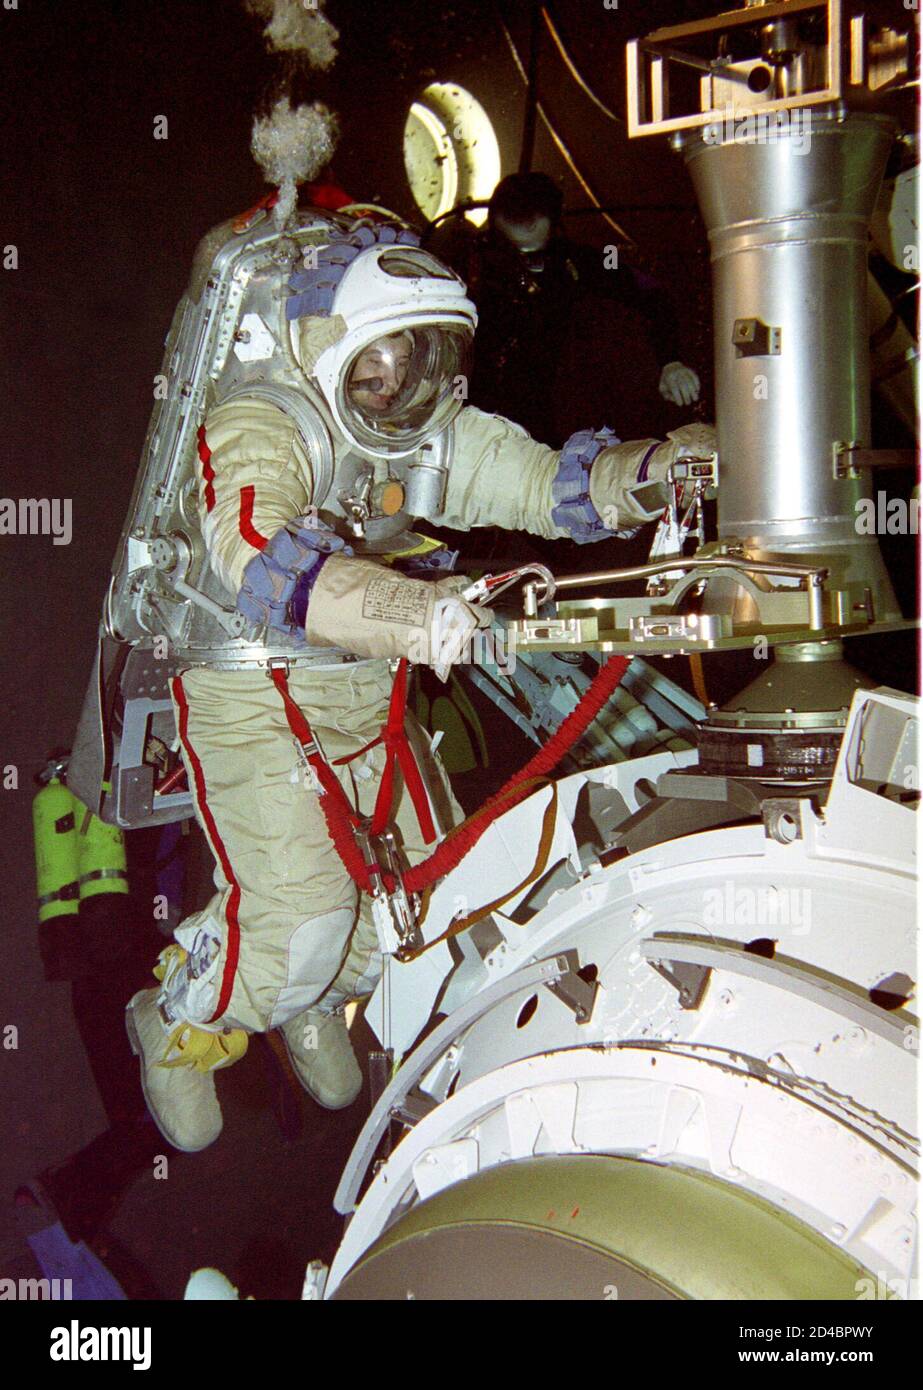 Il cosmonauta russo Vladimir Dezhurov si allena sott'acqua per alcuni elementi di lavoro nello spazio con la Stazione spaziale Internazionale di Star City fuori Mosca, 2 aprile 2001. I cosmonauti russi Dezhurov e Mikhail Tyurin formeranno il prossimo equipaggio per volare alla stazione spaziale orbitale ISS. AS/GB Foto Stock